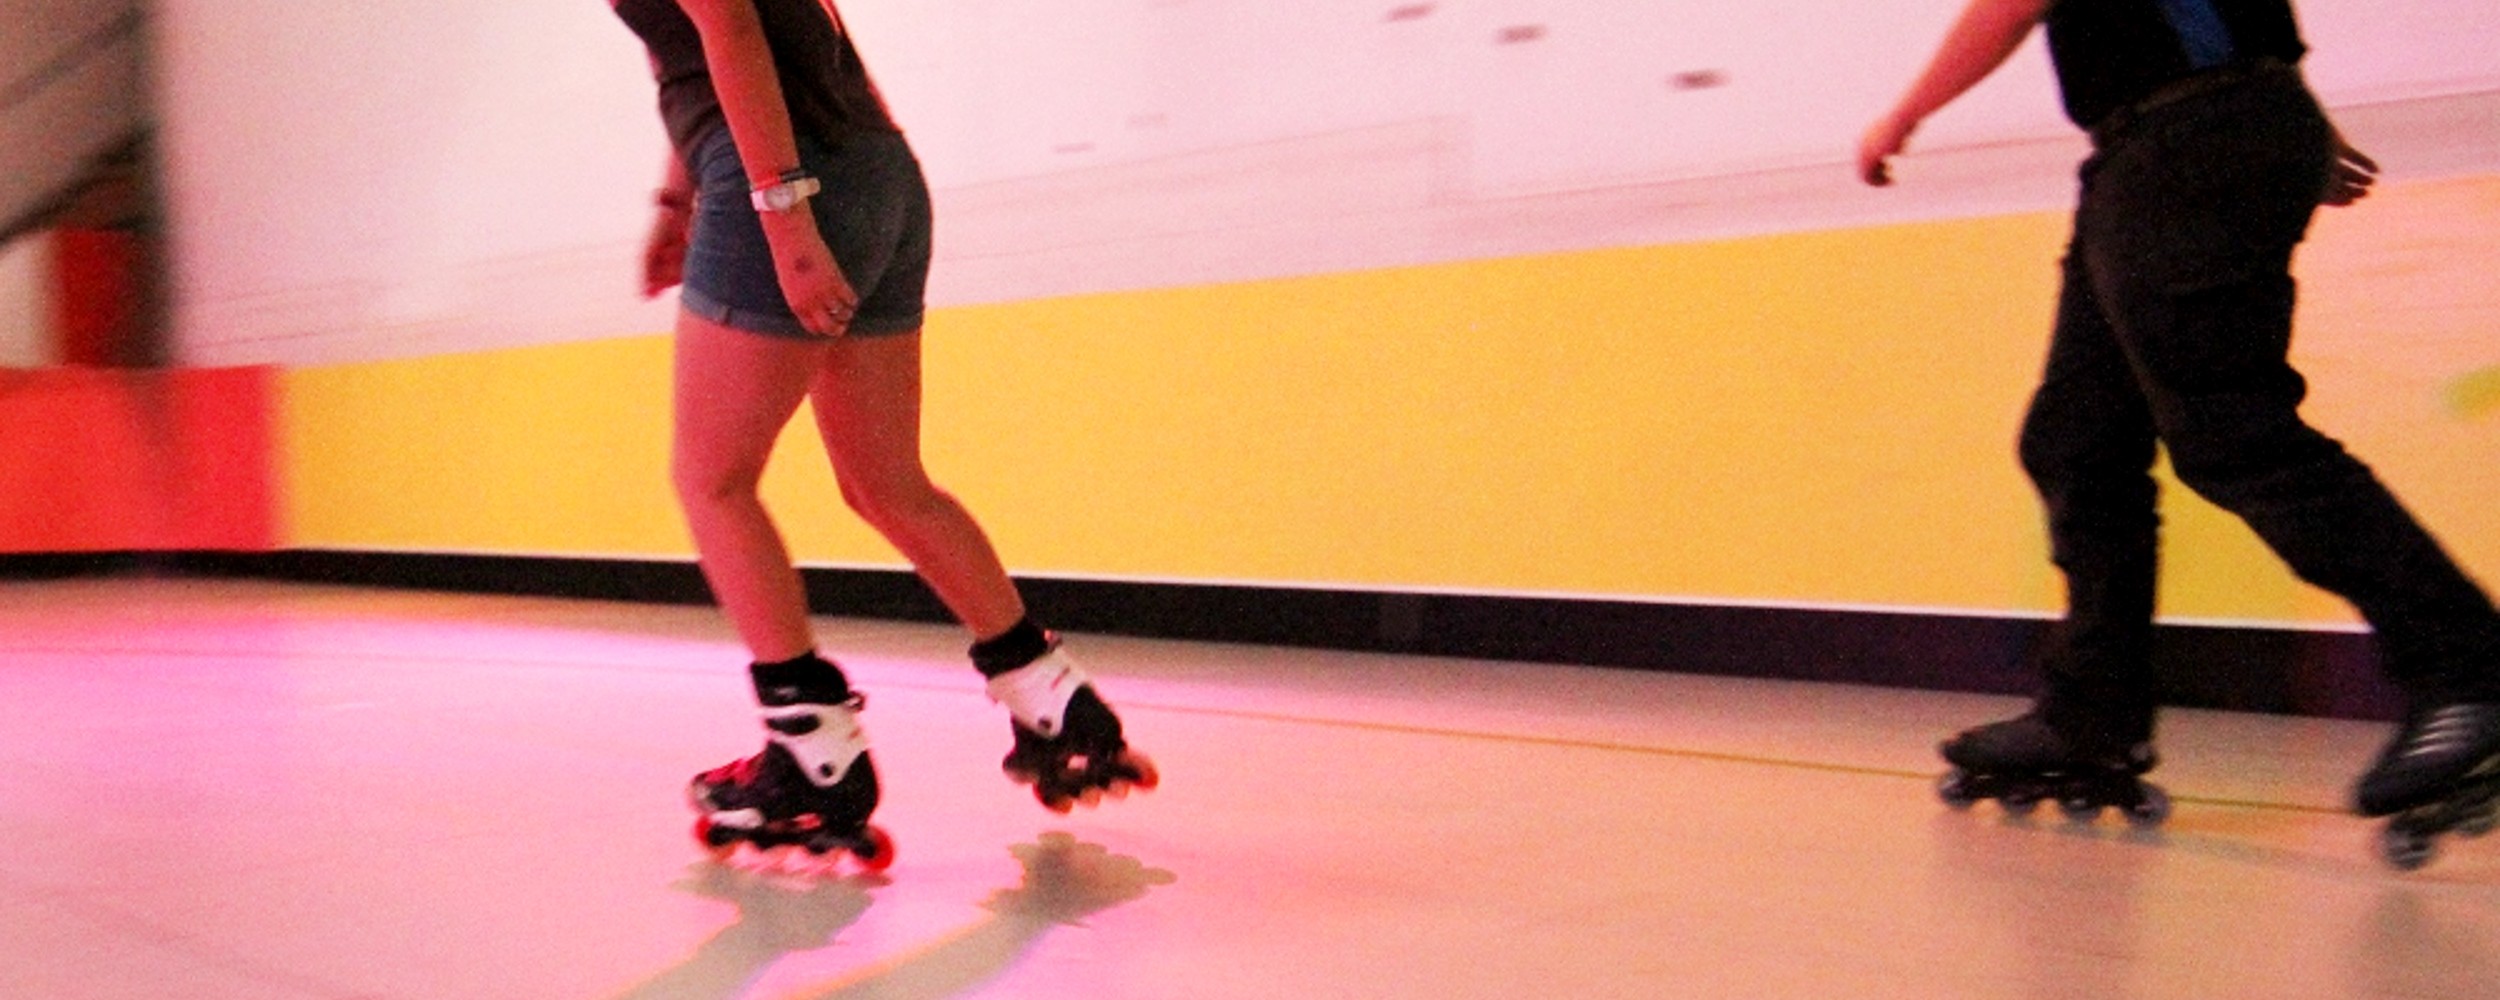 armidale roller skating 3